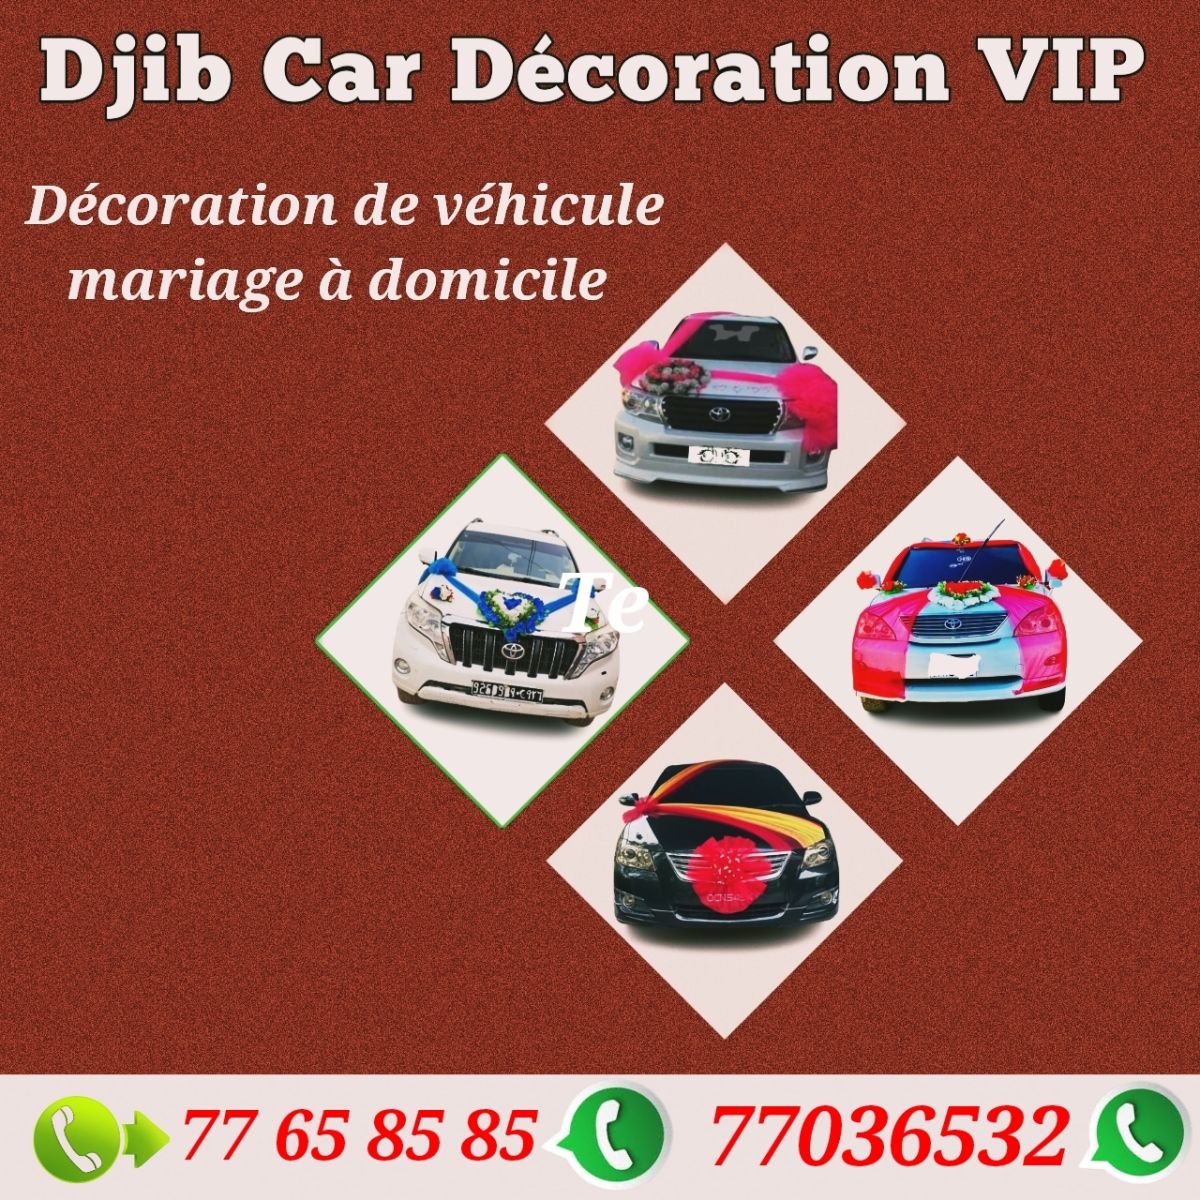 Décoration de voiture pour mariage - Djib Car Décoration à Djibouti